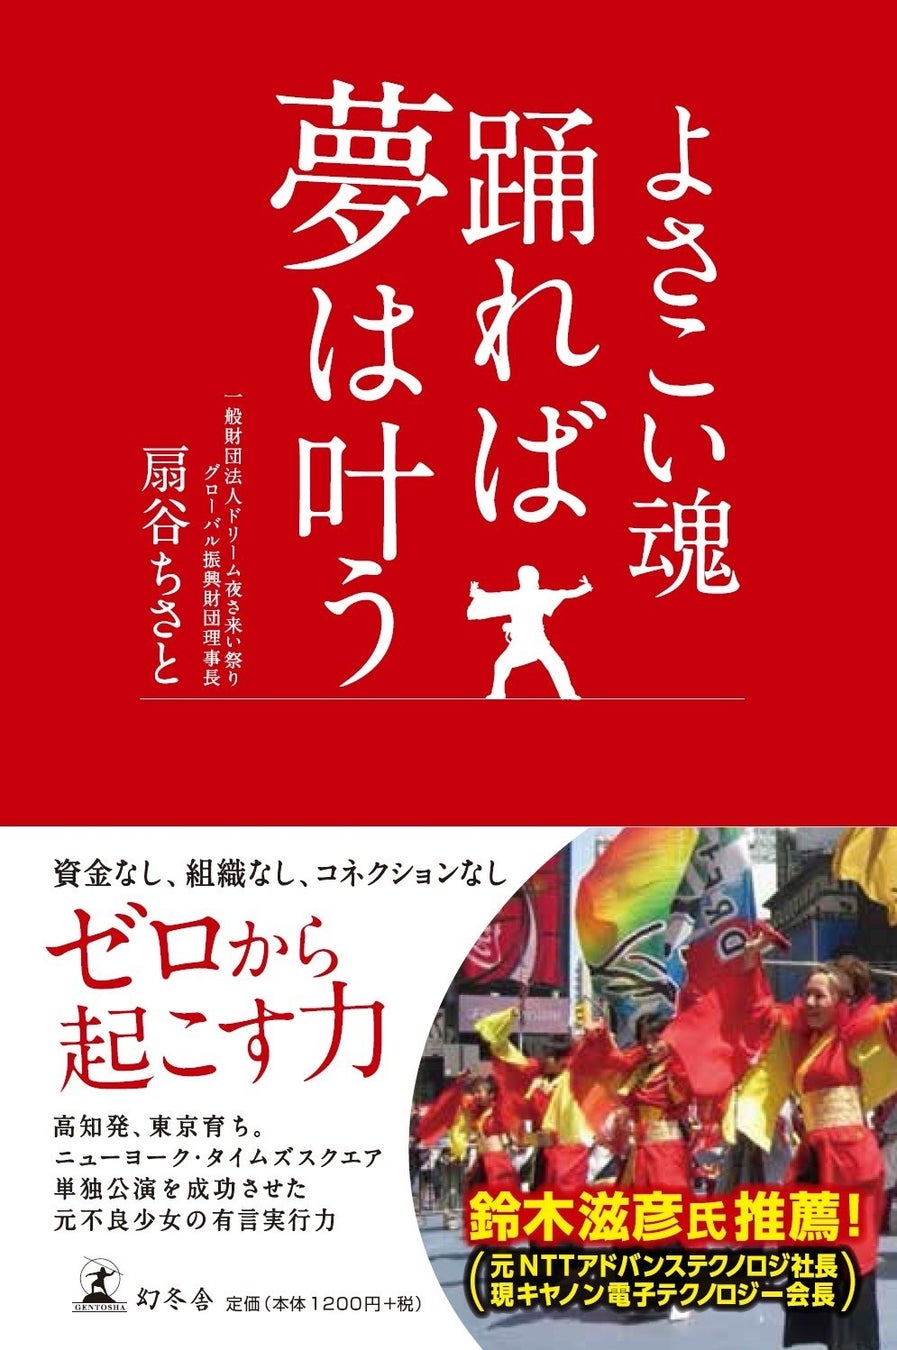 大注目！東京都共催(予定)の大型イベント『第21回ドリーム夜さ来い祭り』開催決定！都内初⁉︎ 